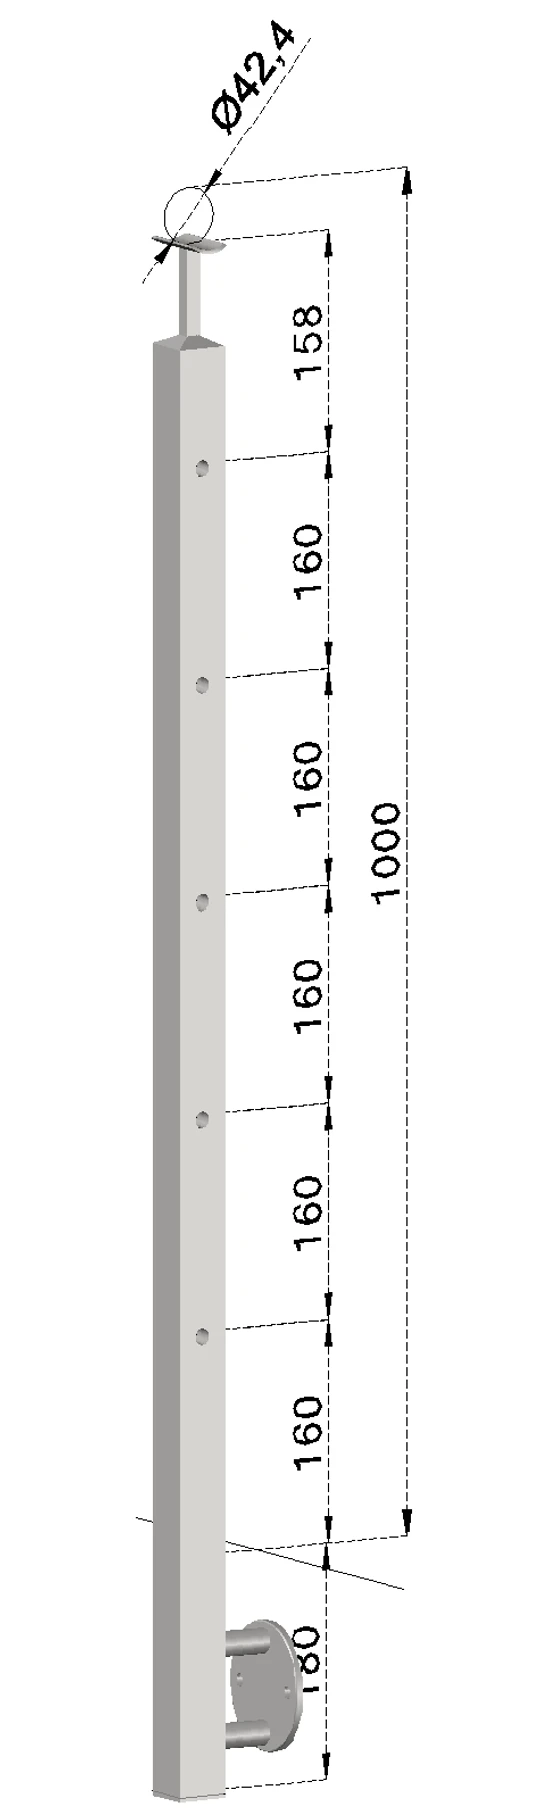 Nerezový sloup, boční kotvení, 5 děrový koncový, pravý, vrch pevný, (40x40 mm), broušená nerez K320 / AISI304